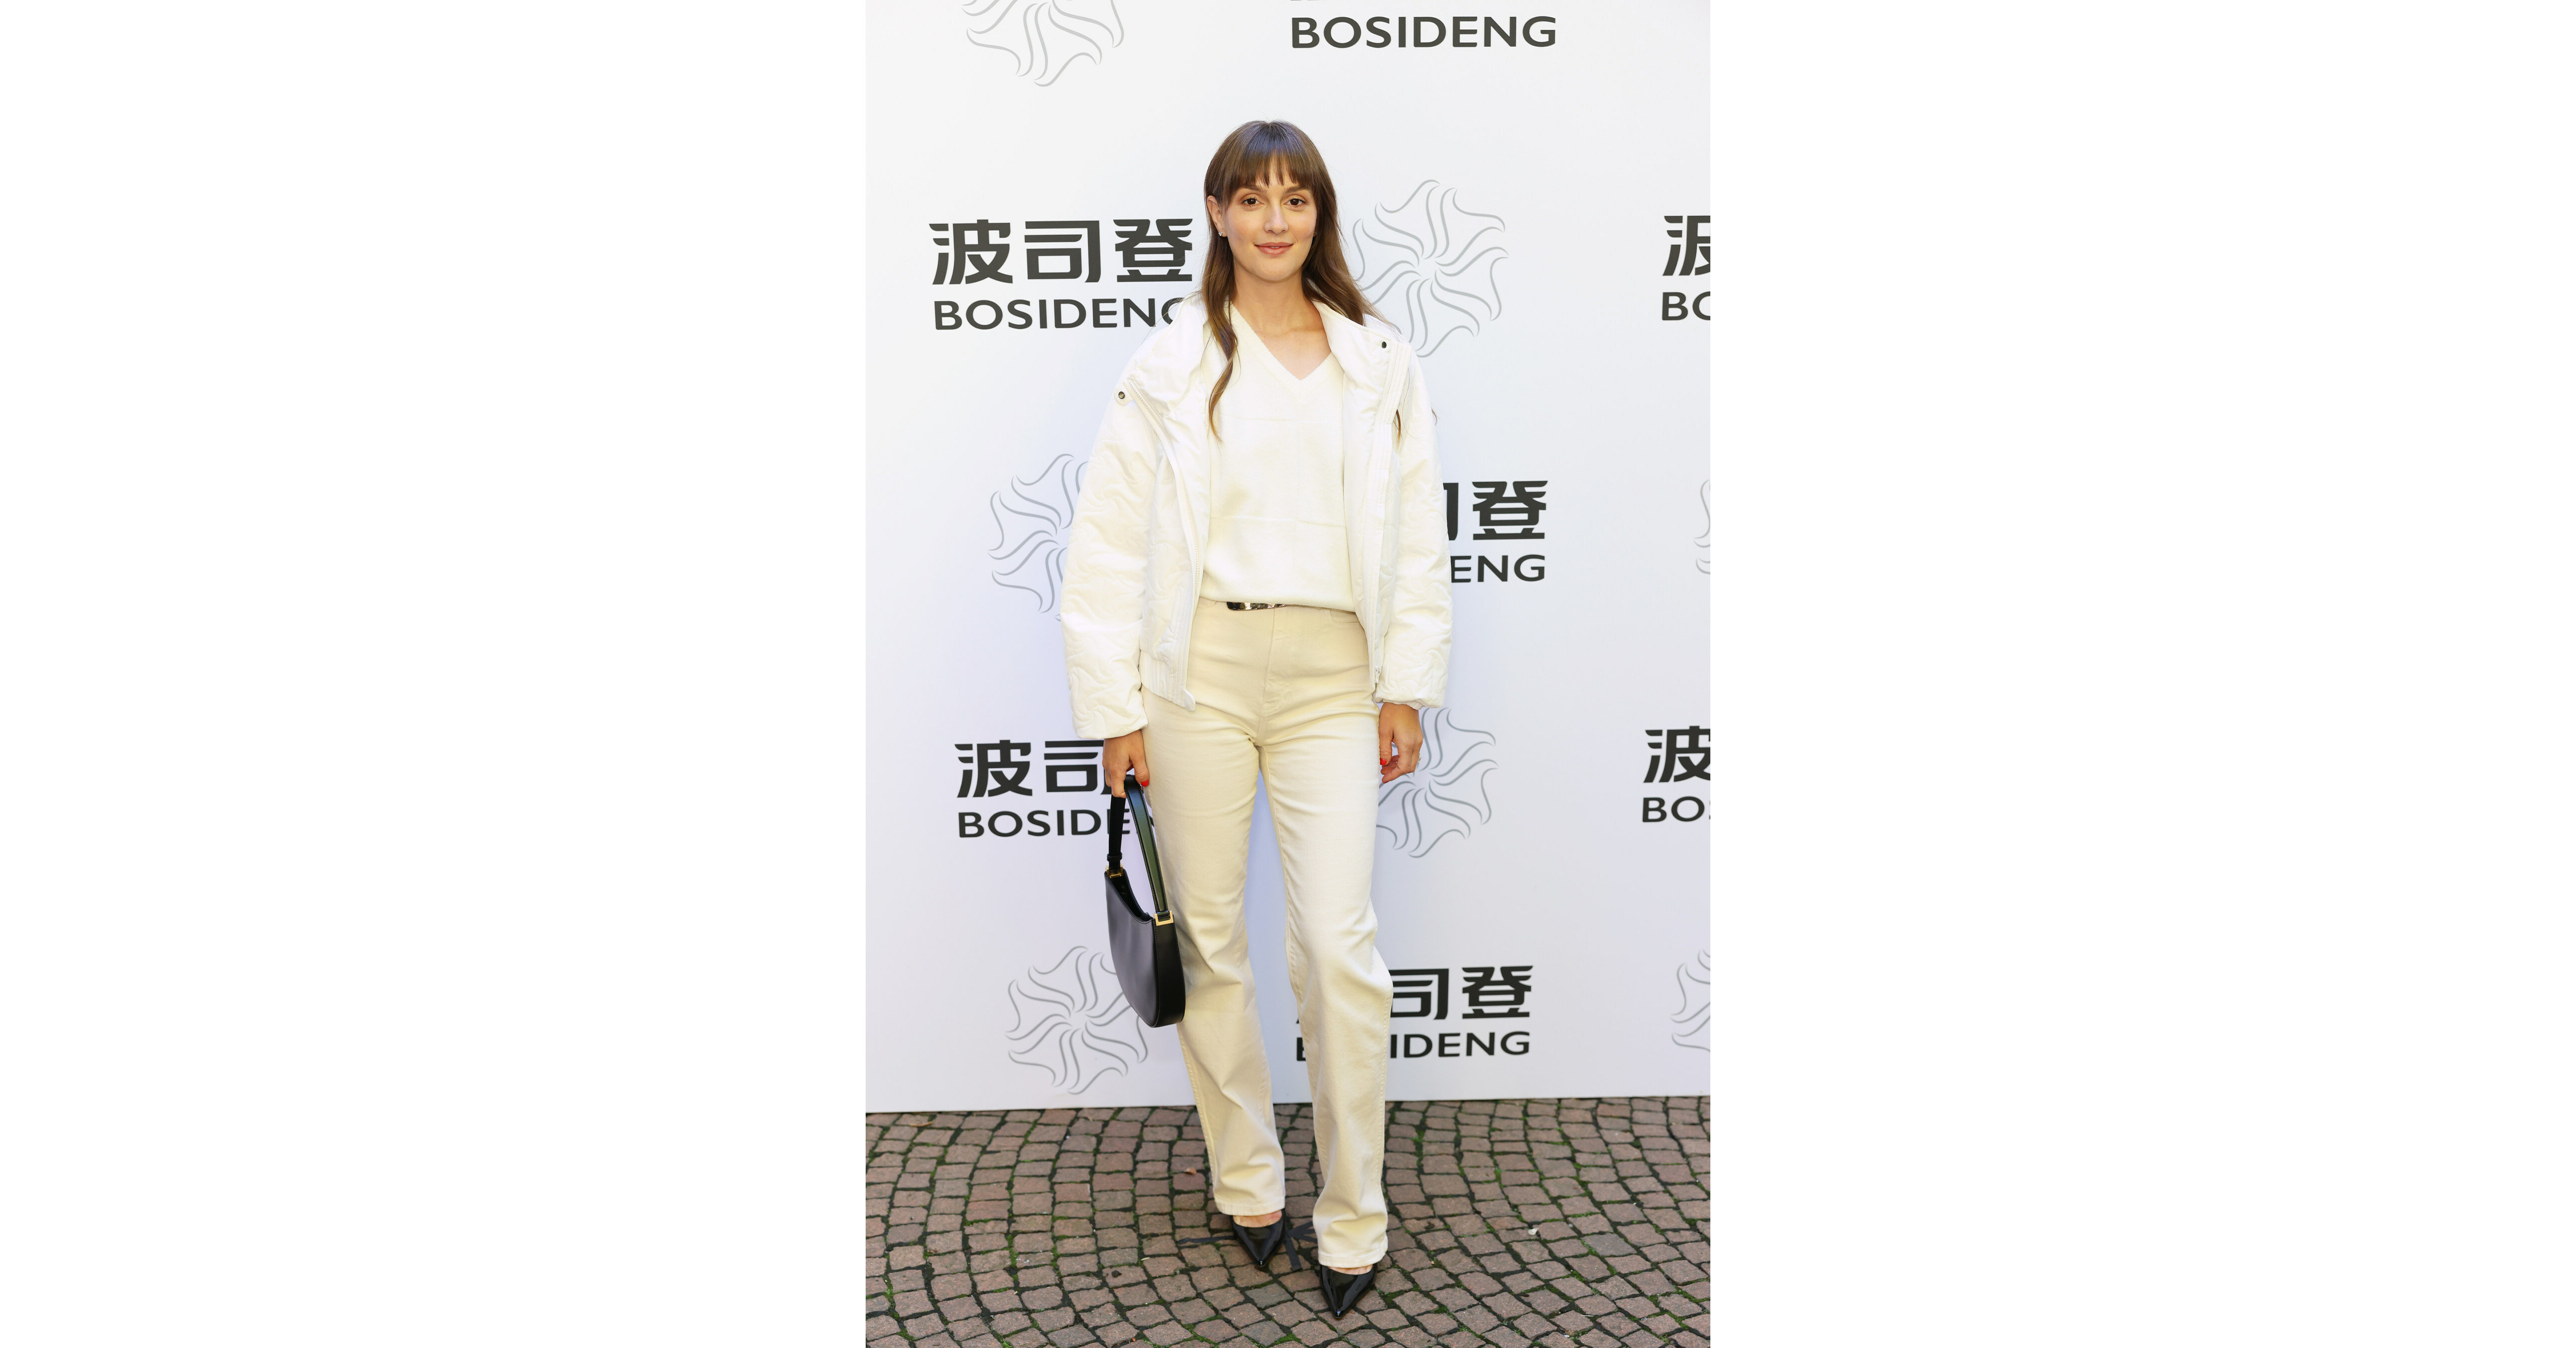 Olympic Champion Eileen Gu walks for Bosideng at Milan Fashion Week.